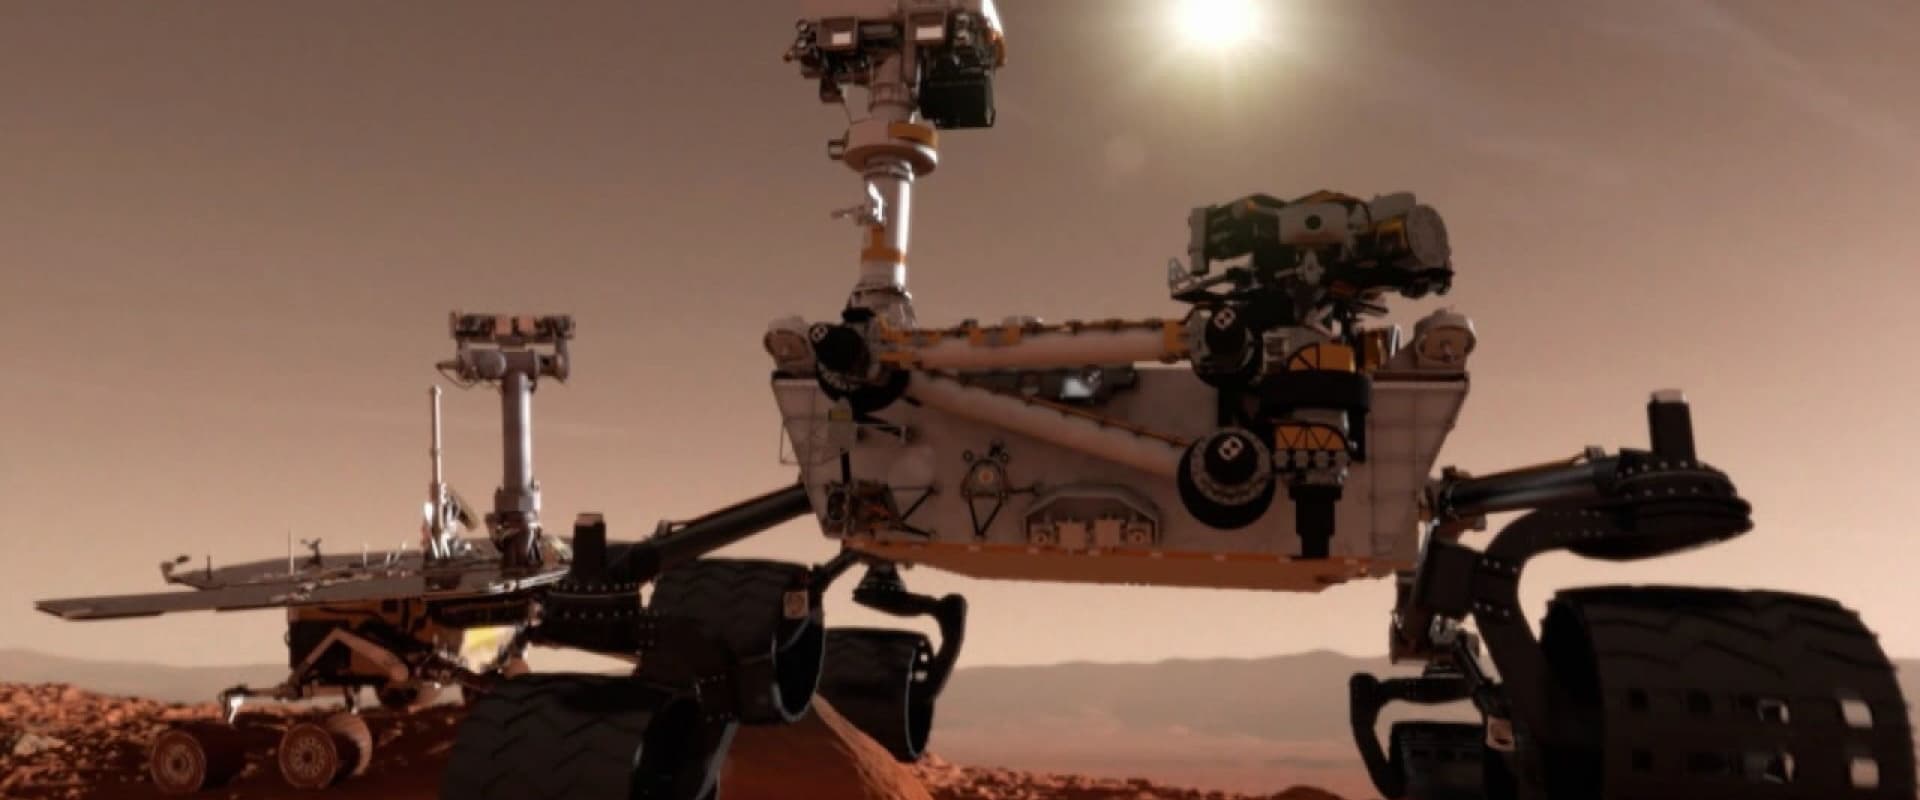 Martian Mega Rover